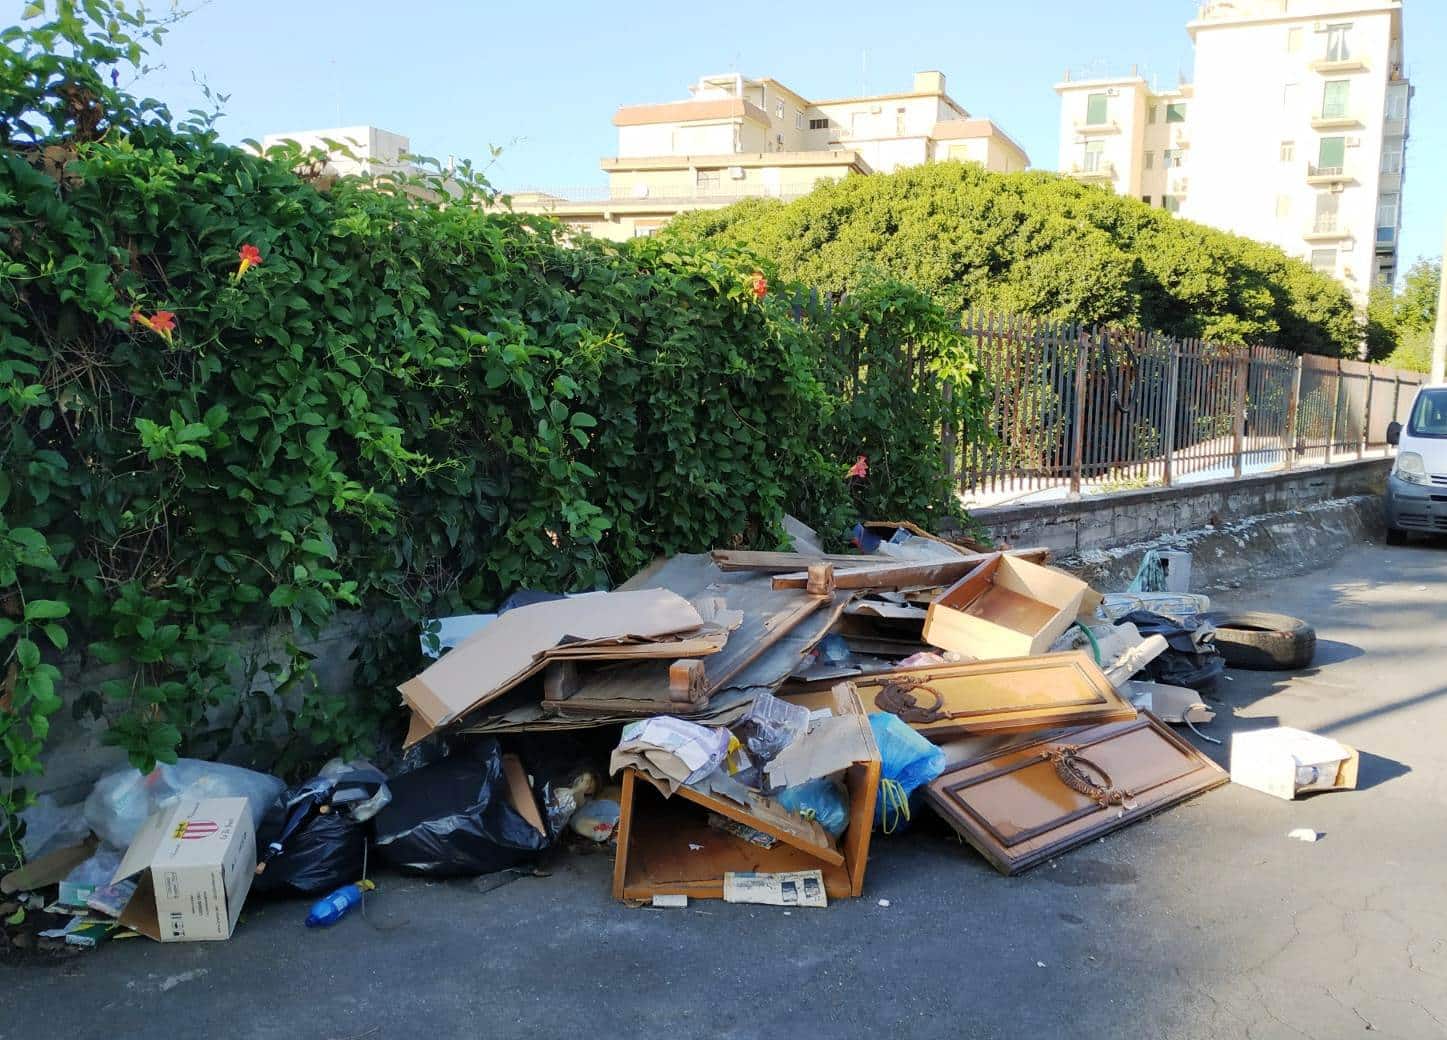 “Basta coi rifiuti ingombranti e pericolosi abbandonati”, l’appello del Comitato Vulcania